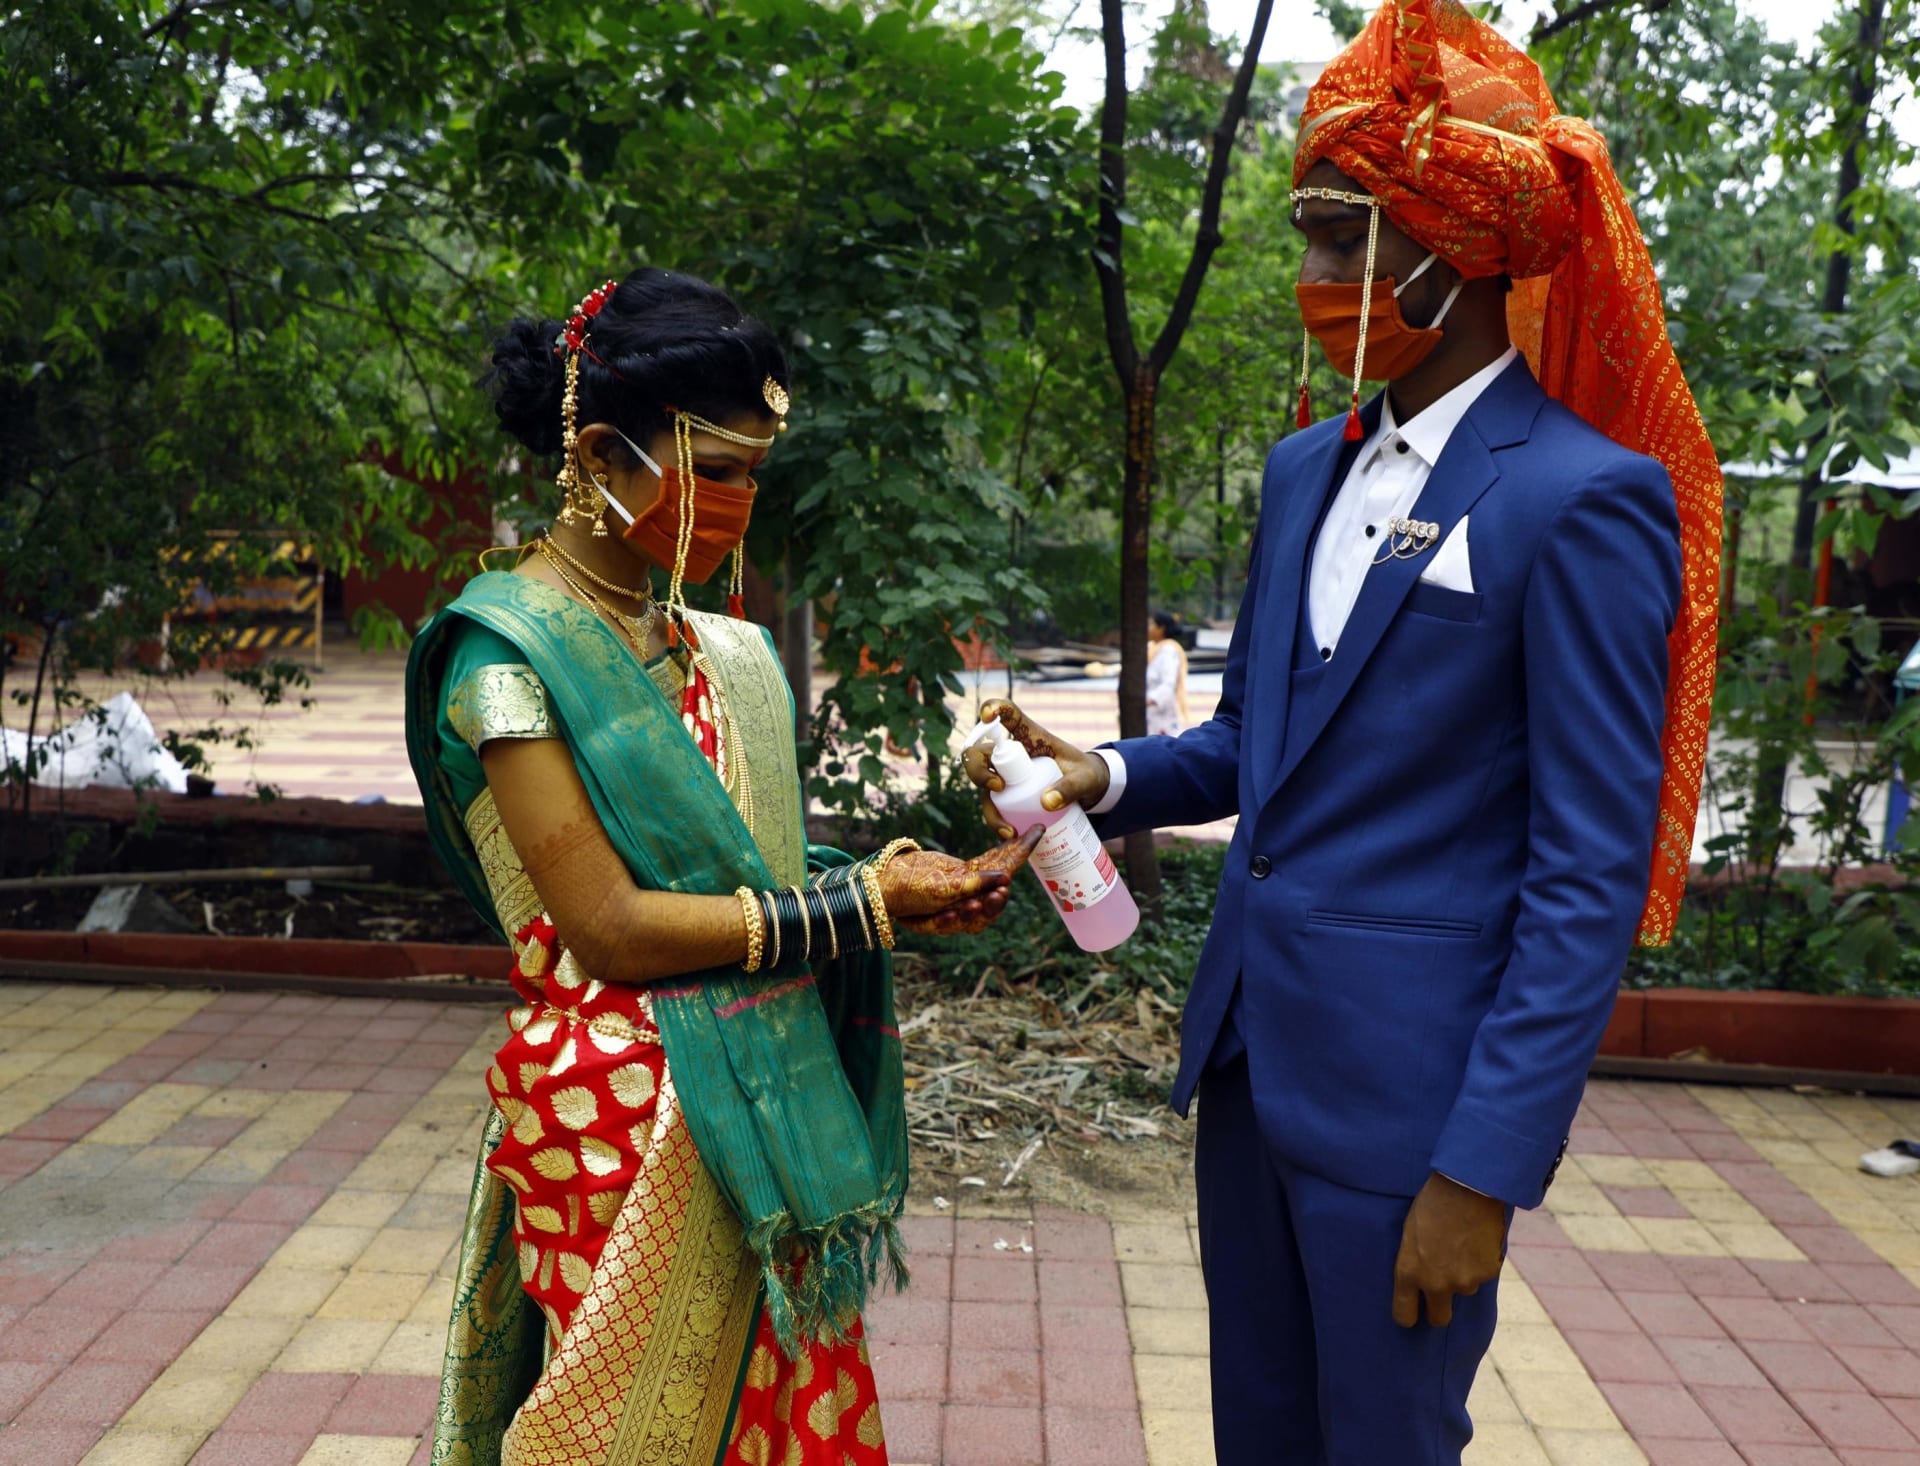 حفلات الزفاف الهندية في زمن الكورونا.. كيف تغيرت؟